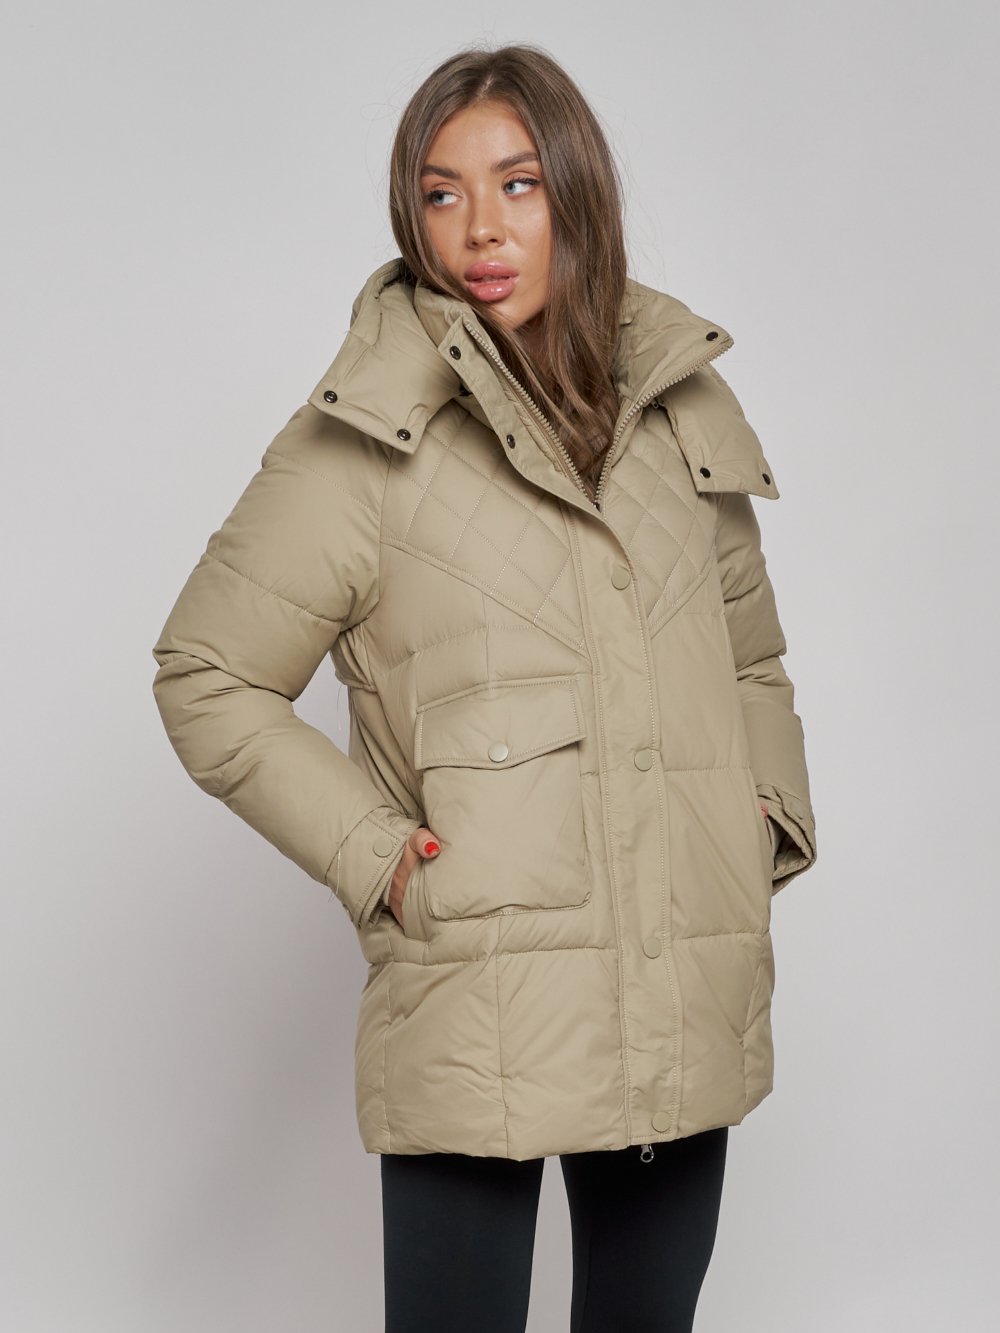 Купить куртку зимнюю оптом от производителя недорого в Москве 52301SK 1